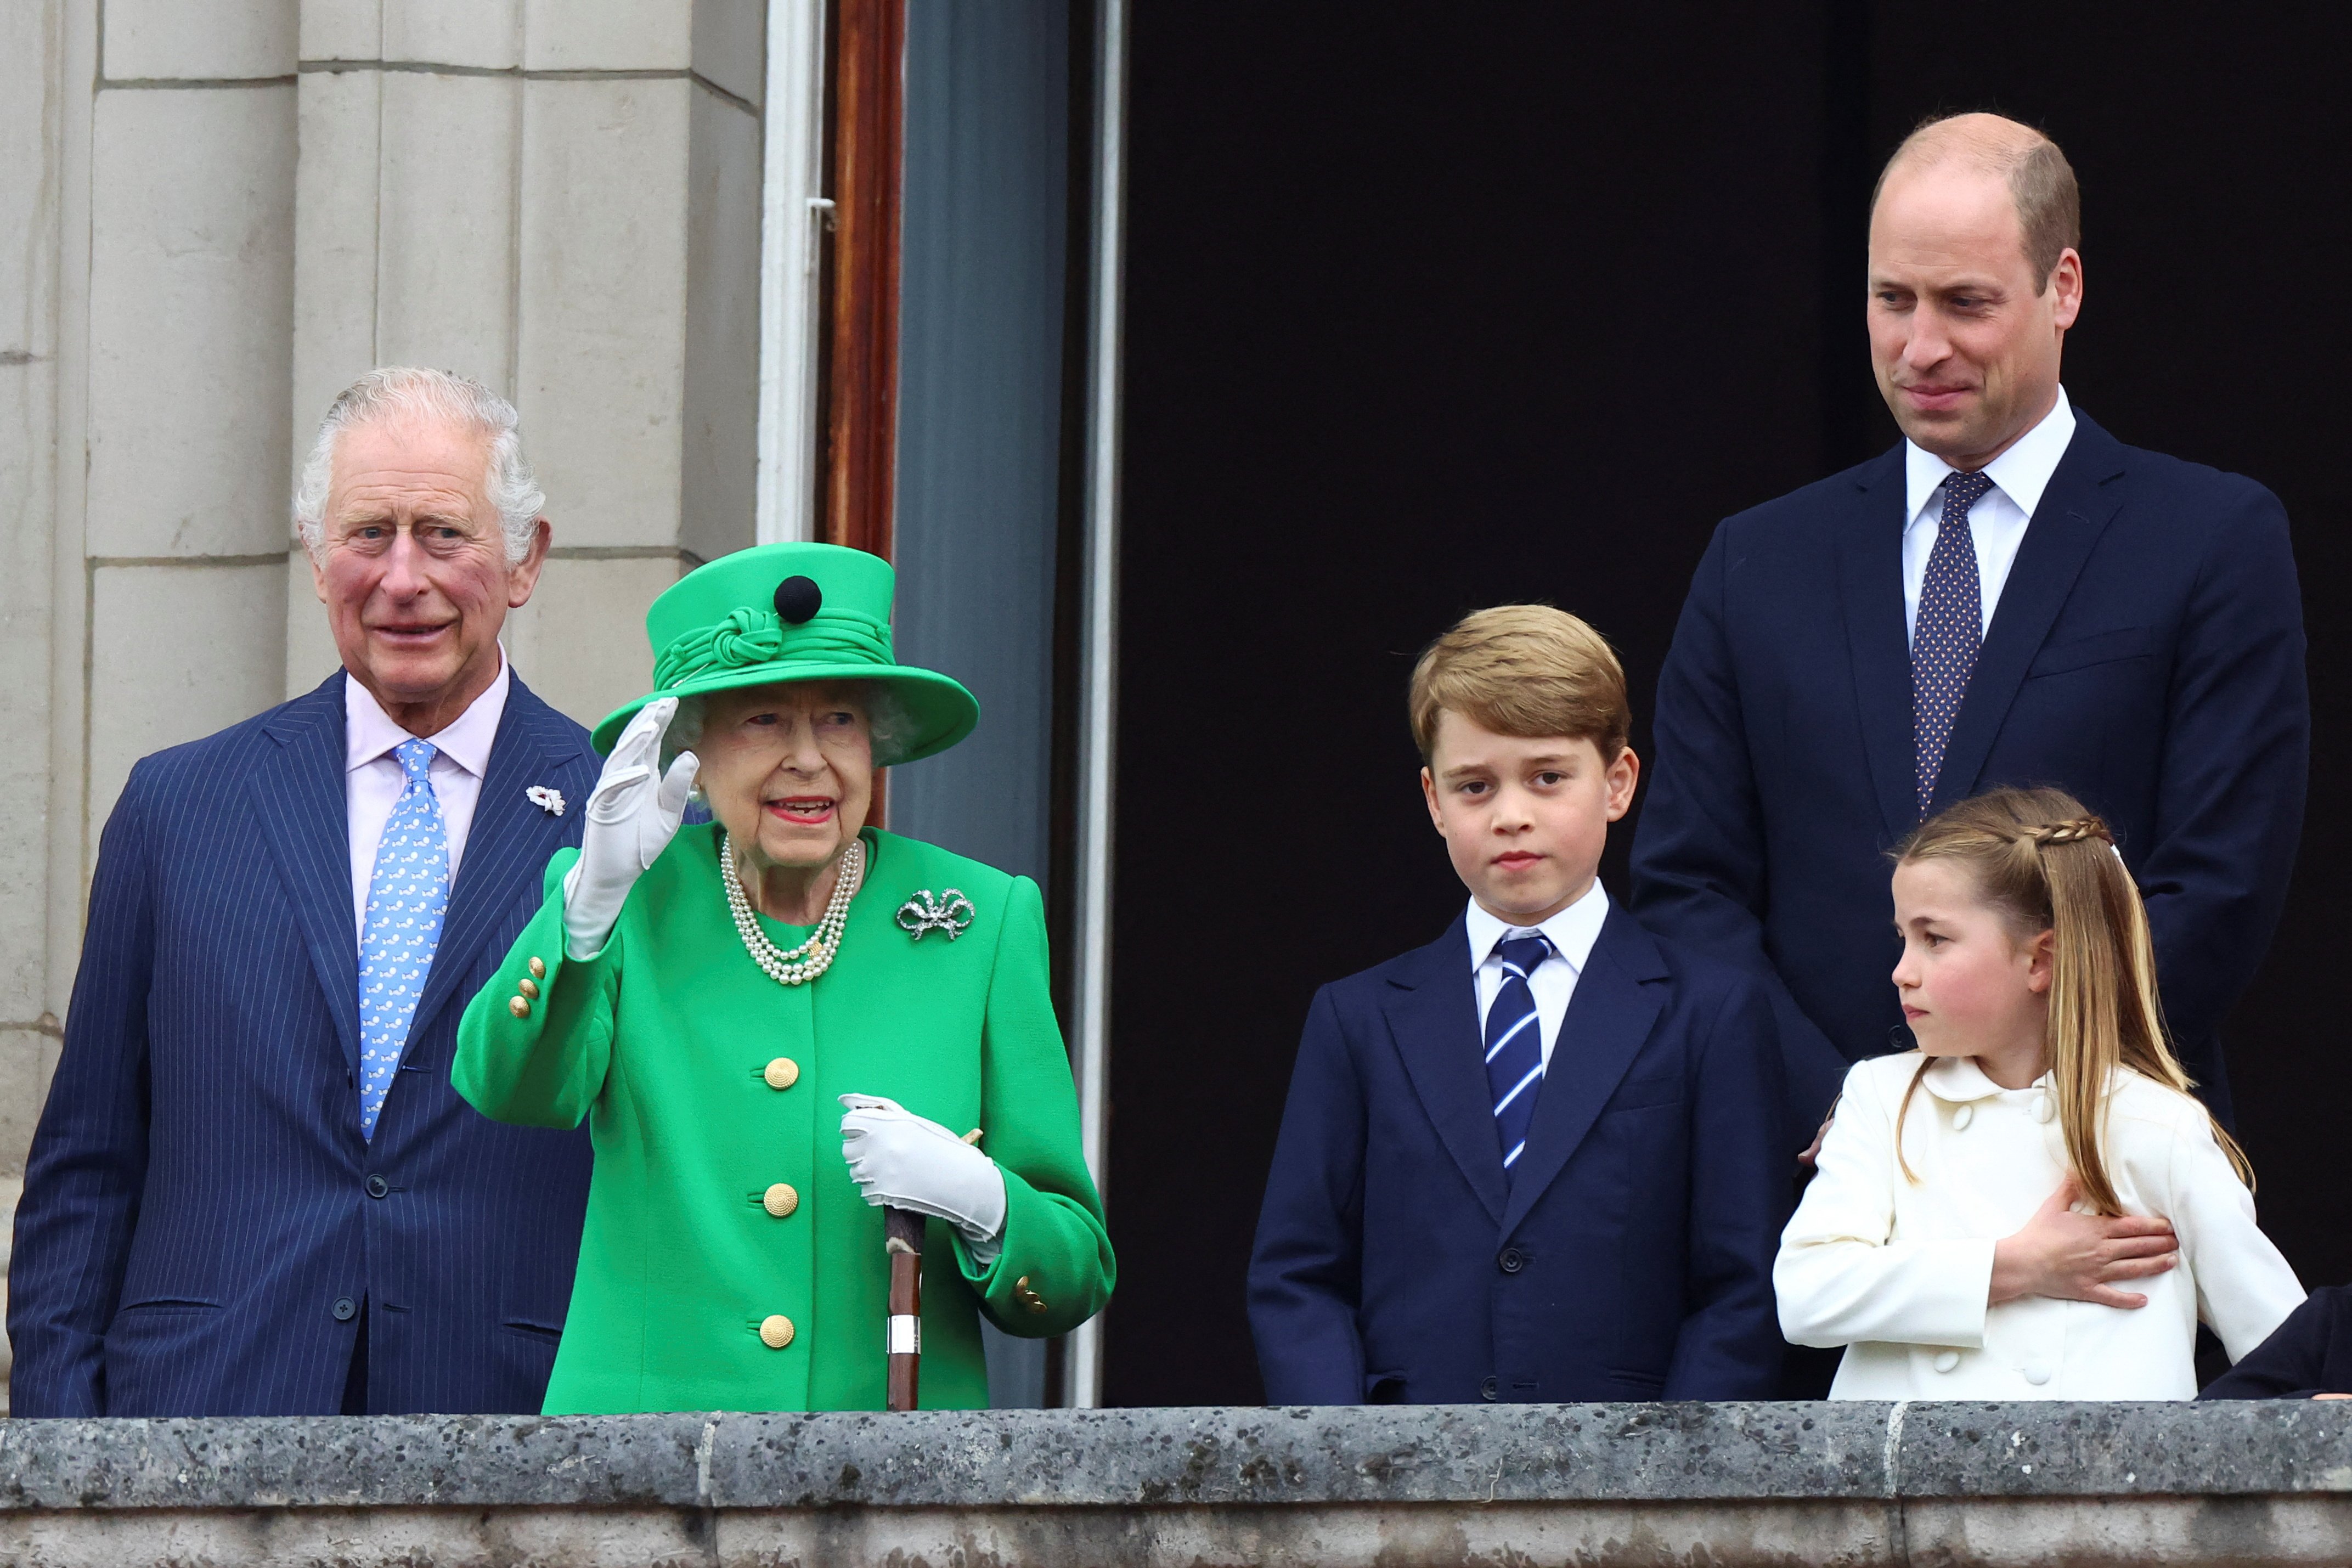 El ahora rey Charles III, la reina Elizabeth II, el príncipe George, el príncipe William y la princesa Charlotte en un balcón durante el desfile del Jubileo de Platino el 5 de junio de 2022 en Londres, Inglaterra. | Foto: Getty Images